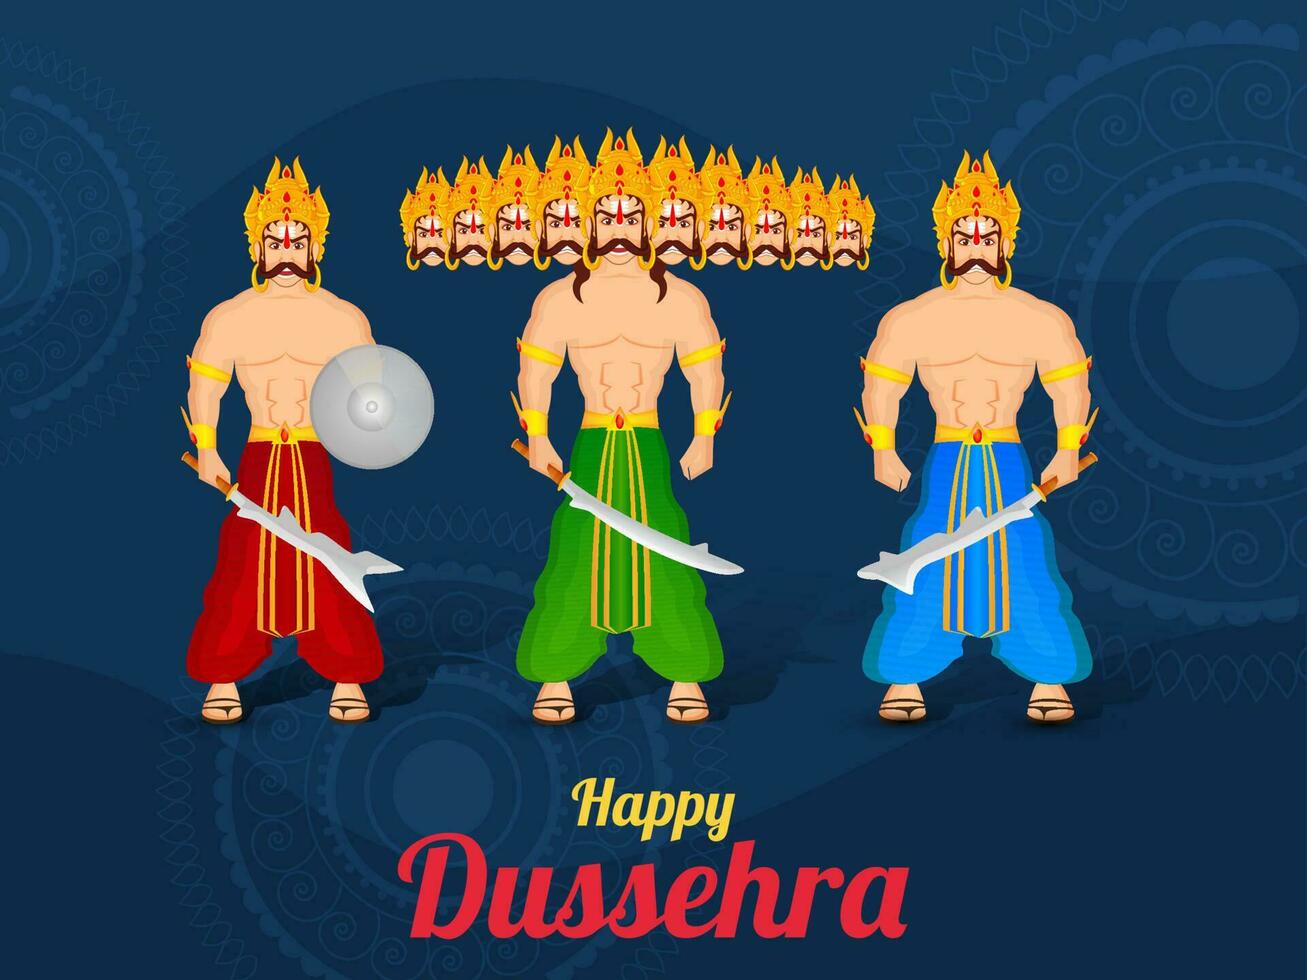 hindú mitológico demonio Rey ravana con su hermano kumbhkarana y hijo meghnad en pie juntos en el ocasión de dussehra festival. vector